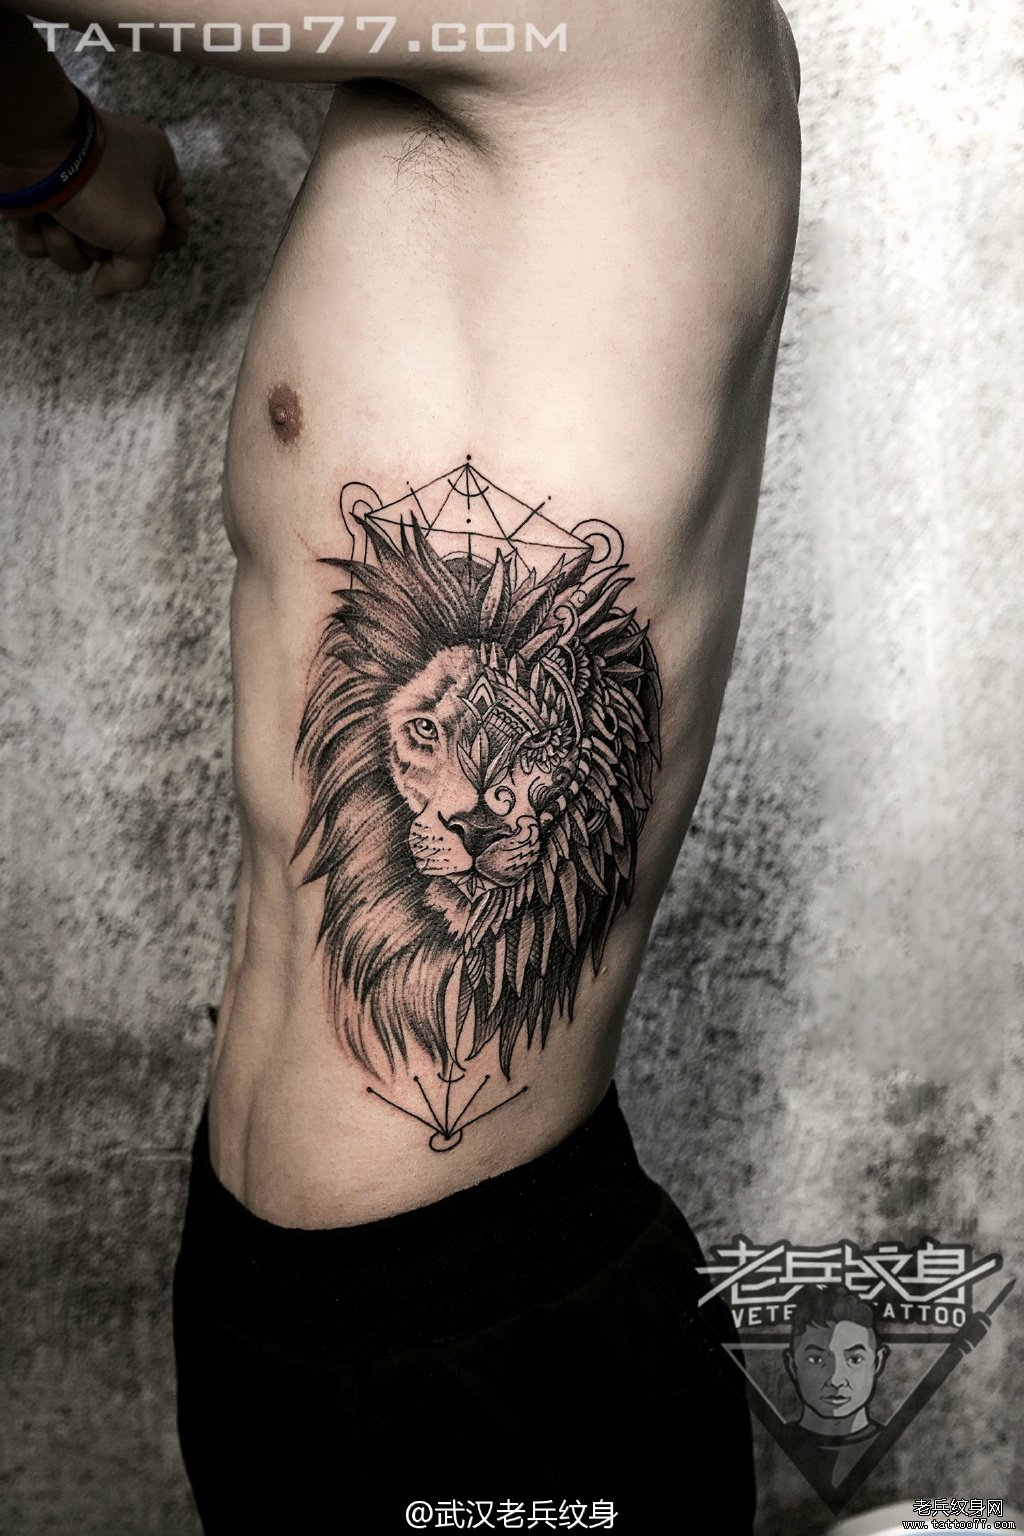 侧腰图腾素描狮子纹身图案作品